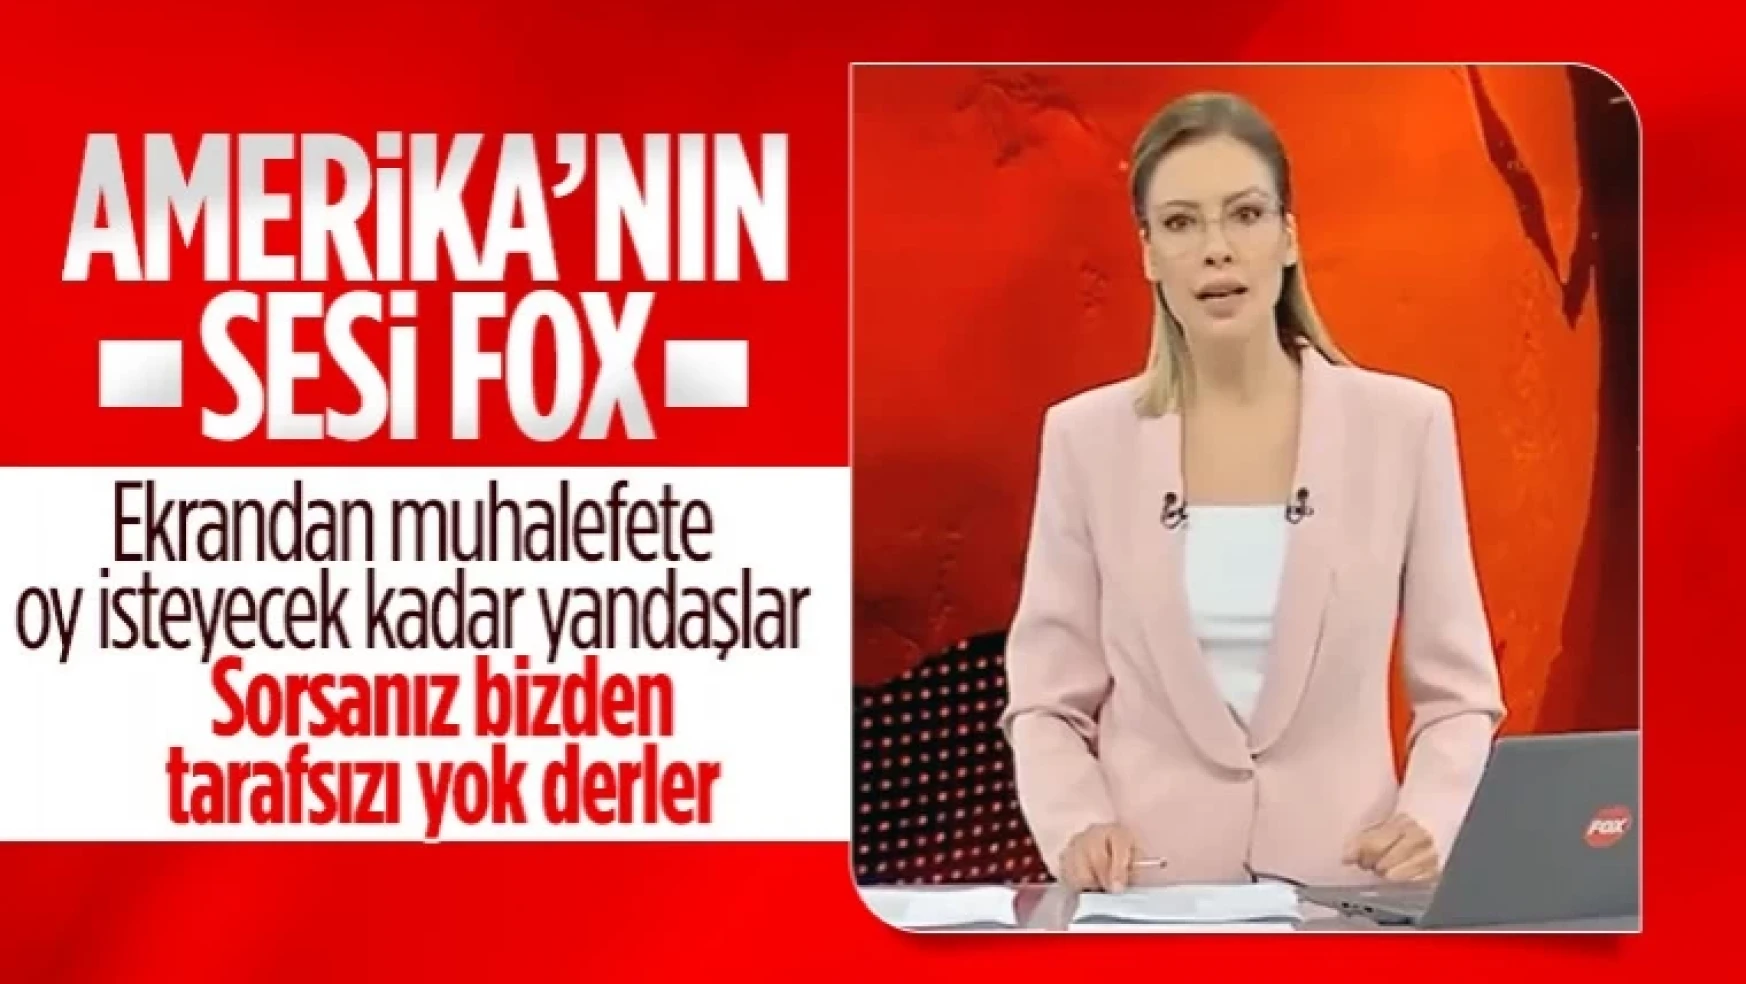 FOX TV sunucusu Gülbin Tosun'dan muhalefet propagandası